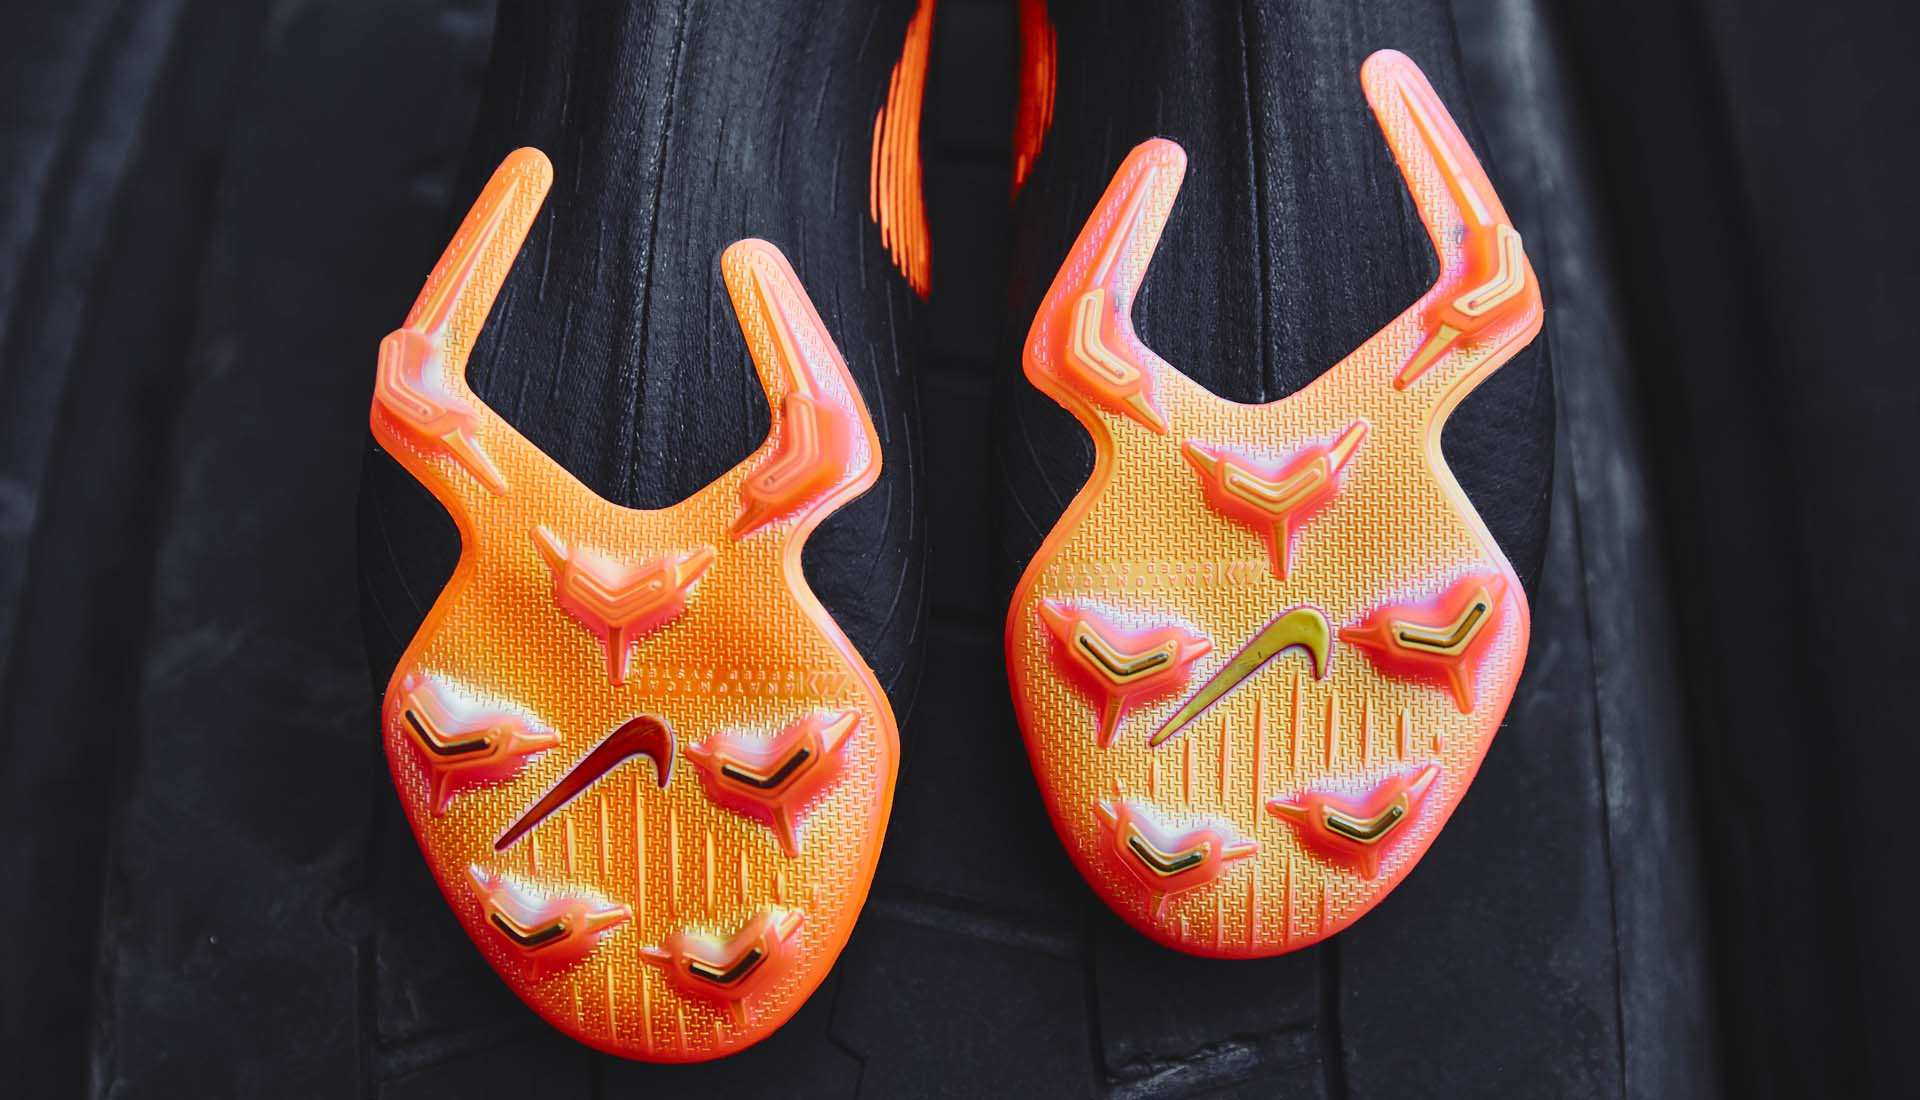 Thiết kế đế giày bóng đá 2 mảnh lần đầu được ra mắt với Mercurial Vapor 360 và Superfly 360